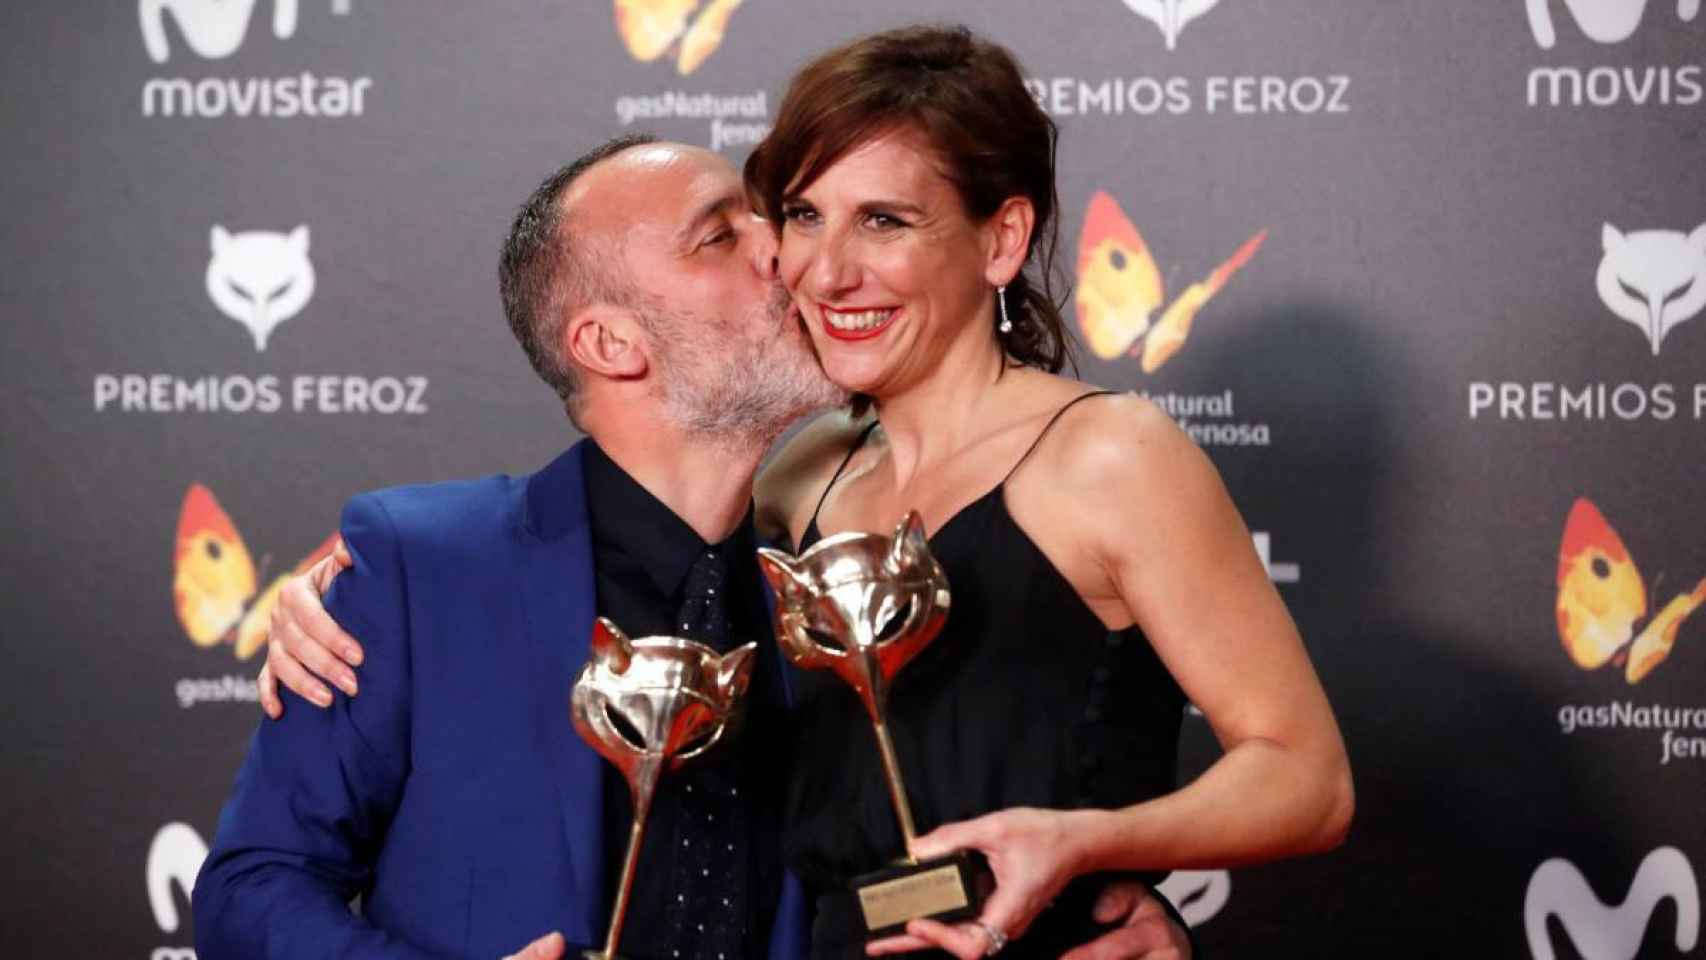 'La Zona' y 'Vergüenza' triunfan en unos Premios Feroz poco repartidos